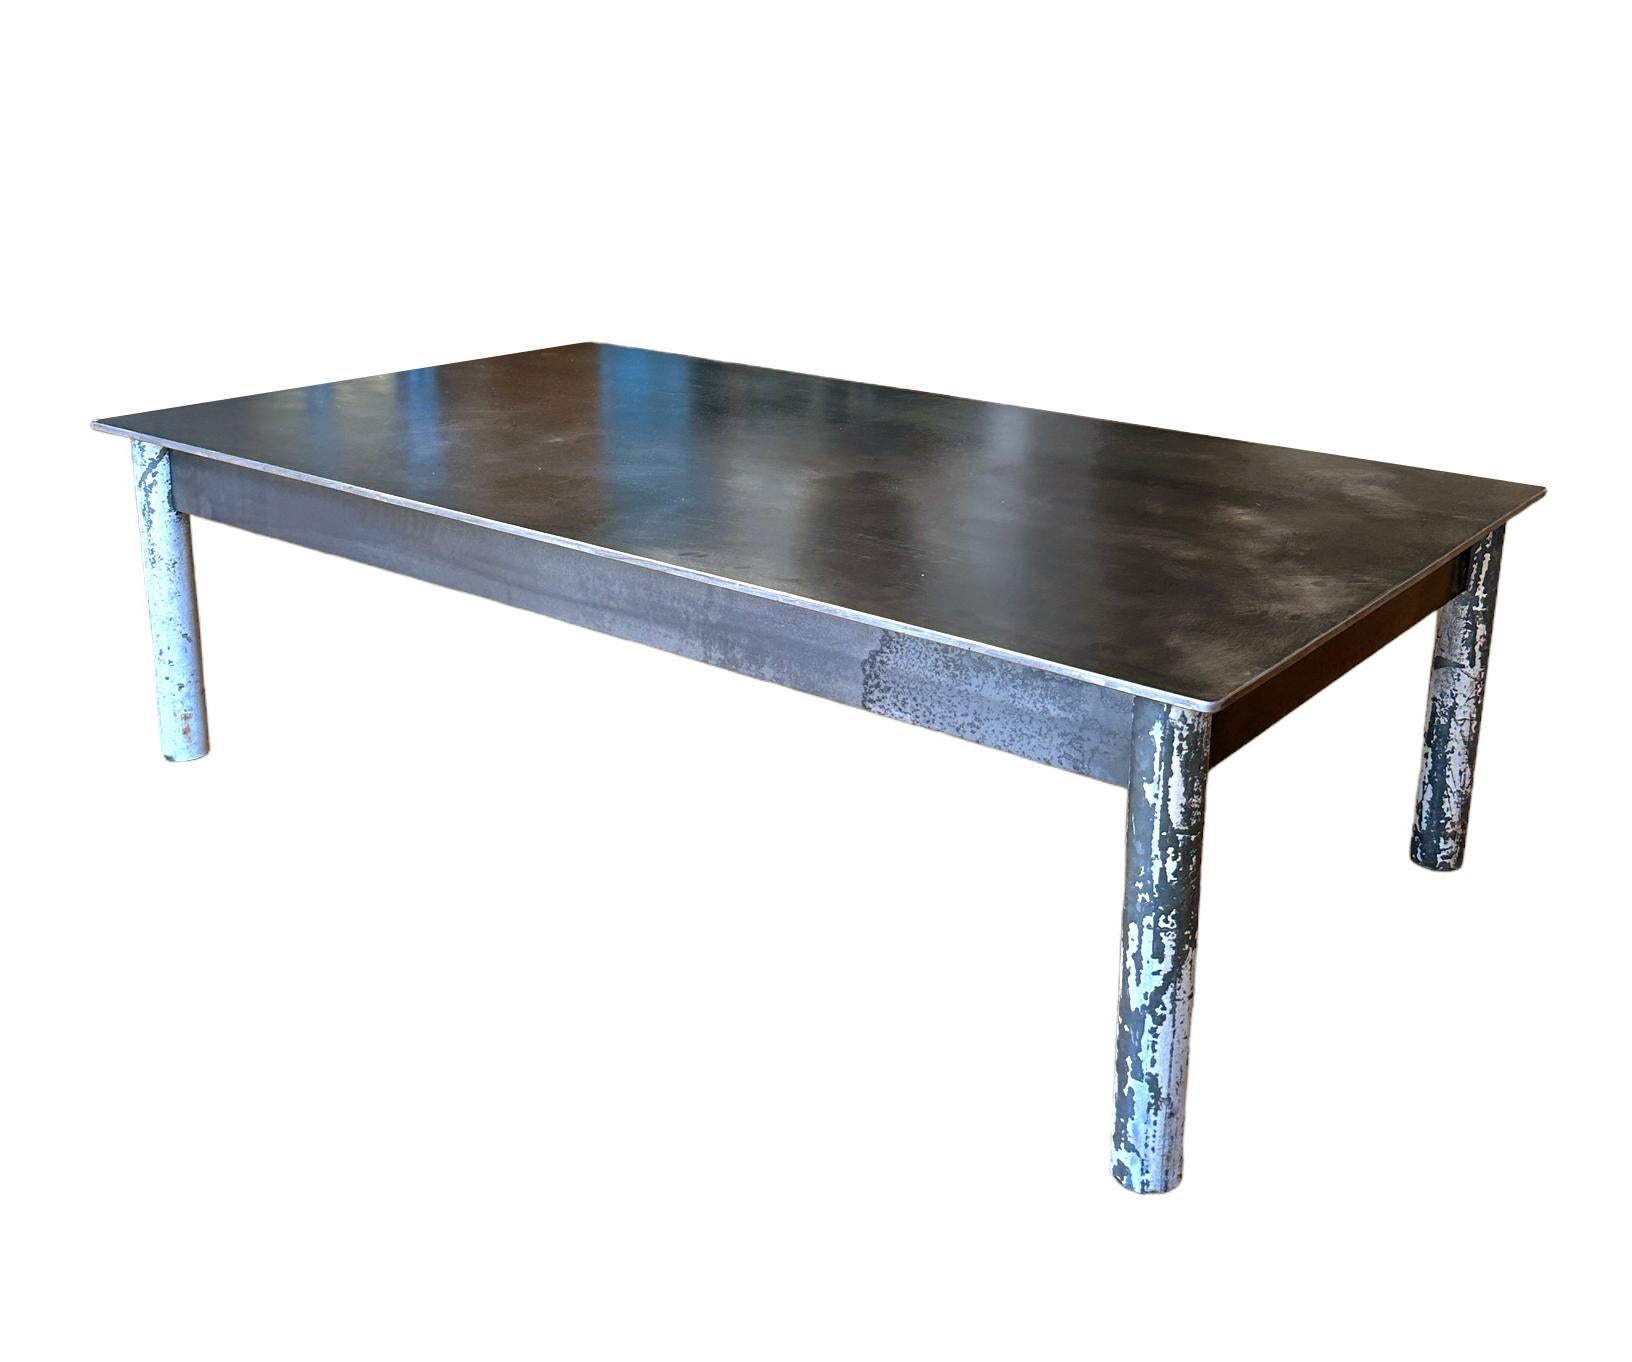 Cette table basse est fabriquée avec de l'acier laminé à chaud et des pieds en tubes d'acier réutilisés.  Les pieds étaient auparavant peints, mais l'artiste les a sablés et a conservé une grande partie de la peinture pour ajouter à l'esthétique